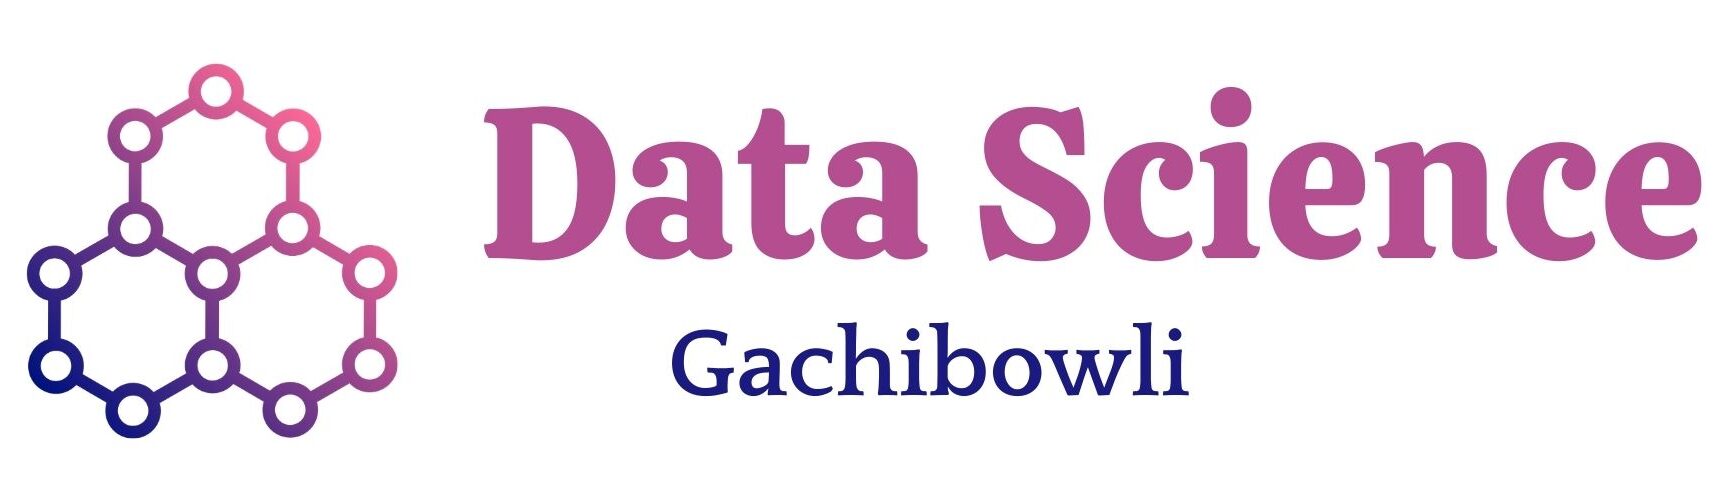 Data Science Gachibowli